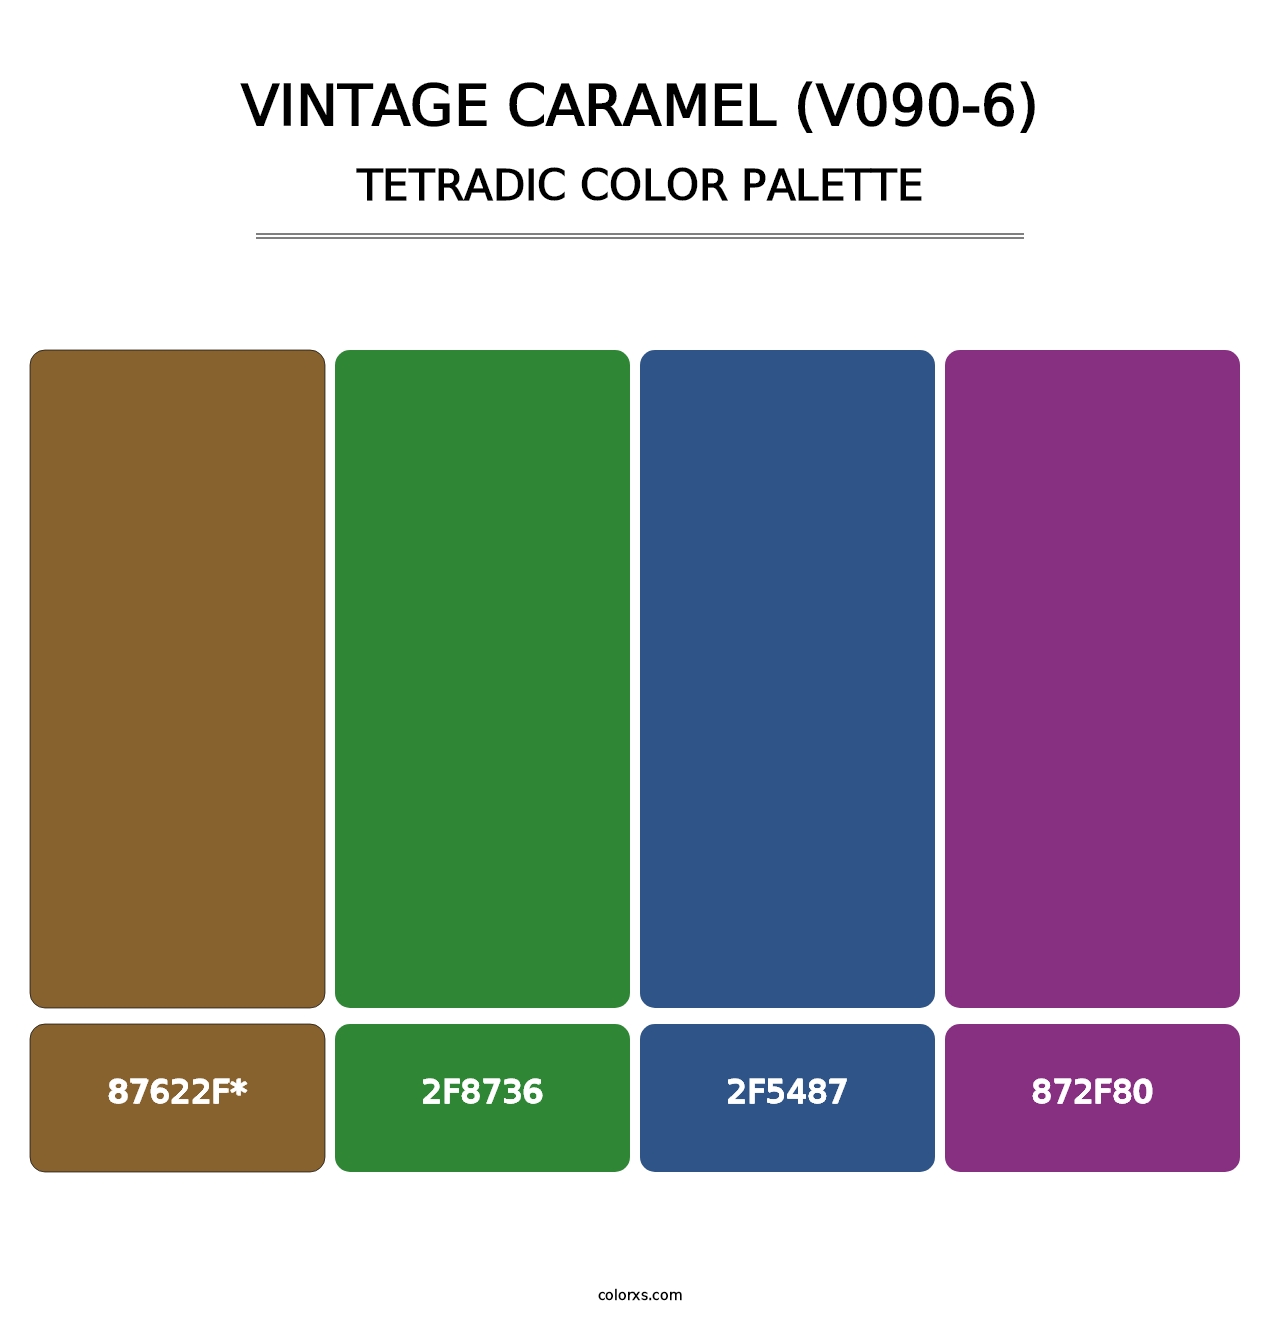 Vintage Caramel (V090-6) - Tetradic Color Palette